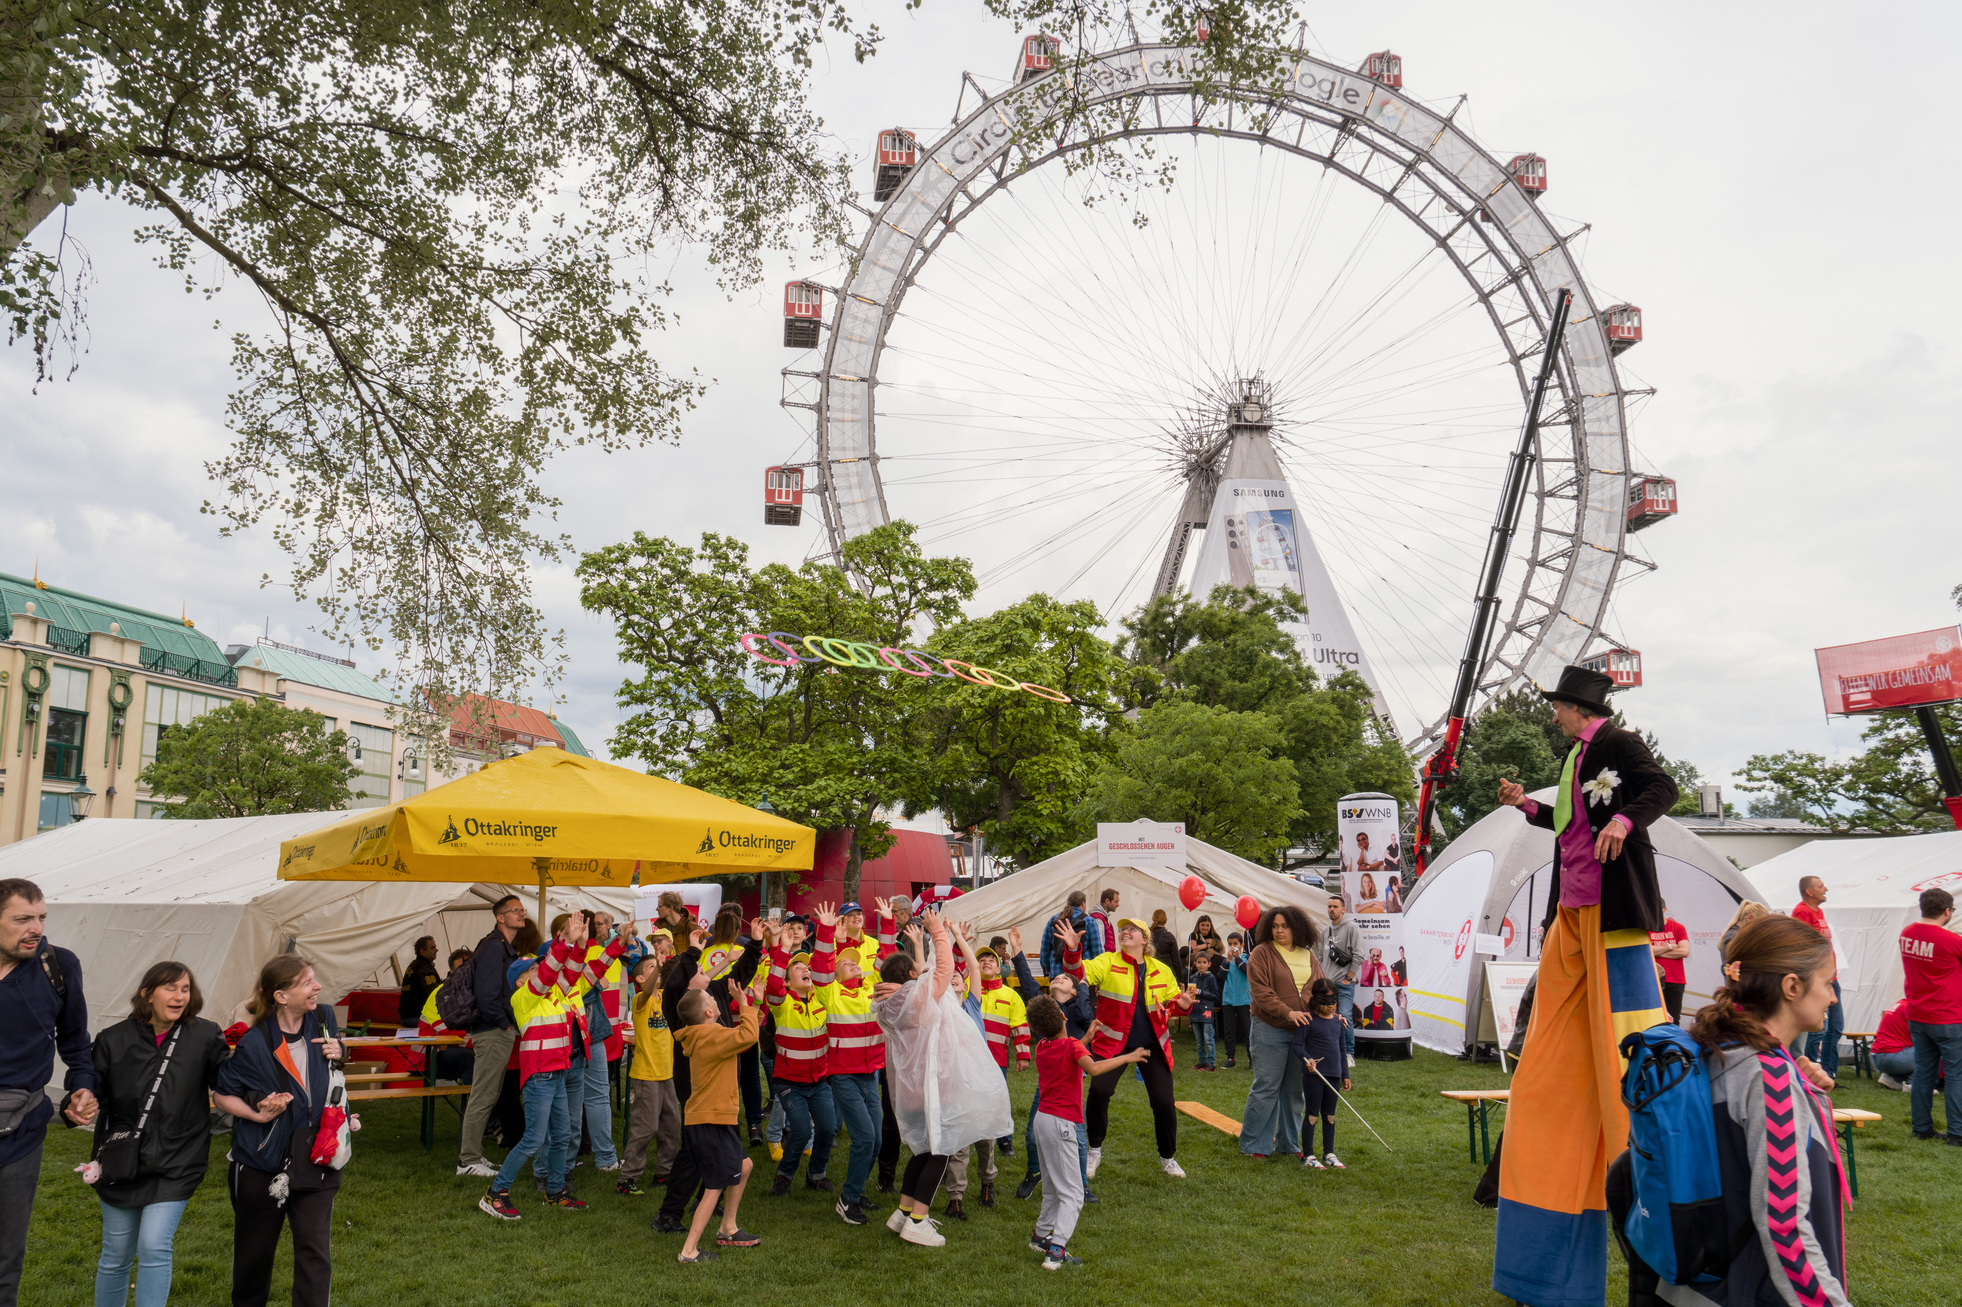 Aufnahme vom Tag des Samariterbundes, im Vordergrund Stelzengeher, der Ringe zu Kindern wirft, im Hintergrund Riesenrad, mehrere Schirme, Zelte und Menschen